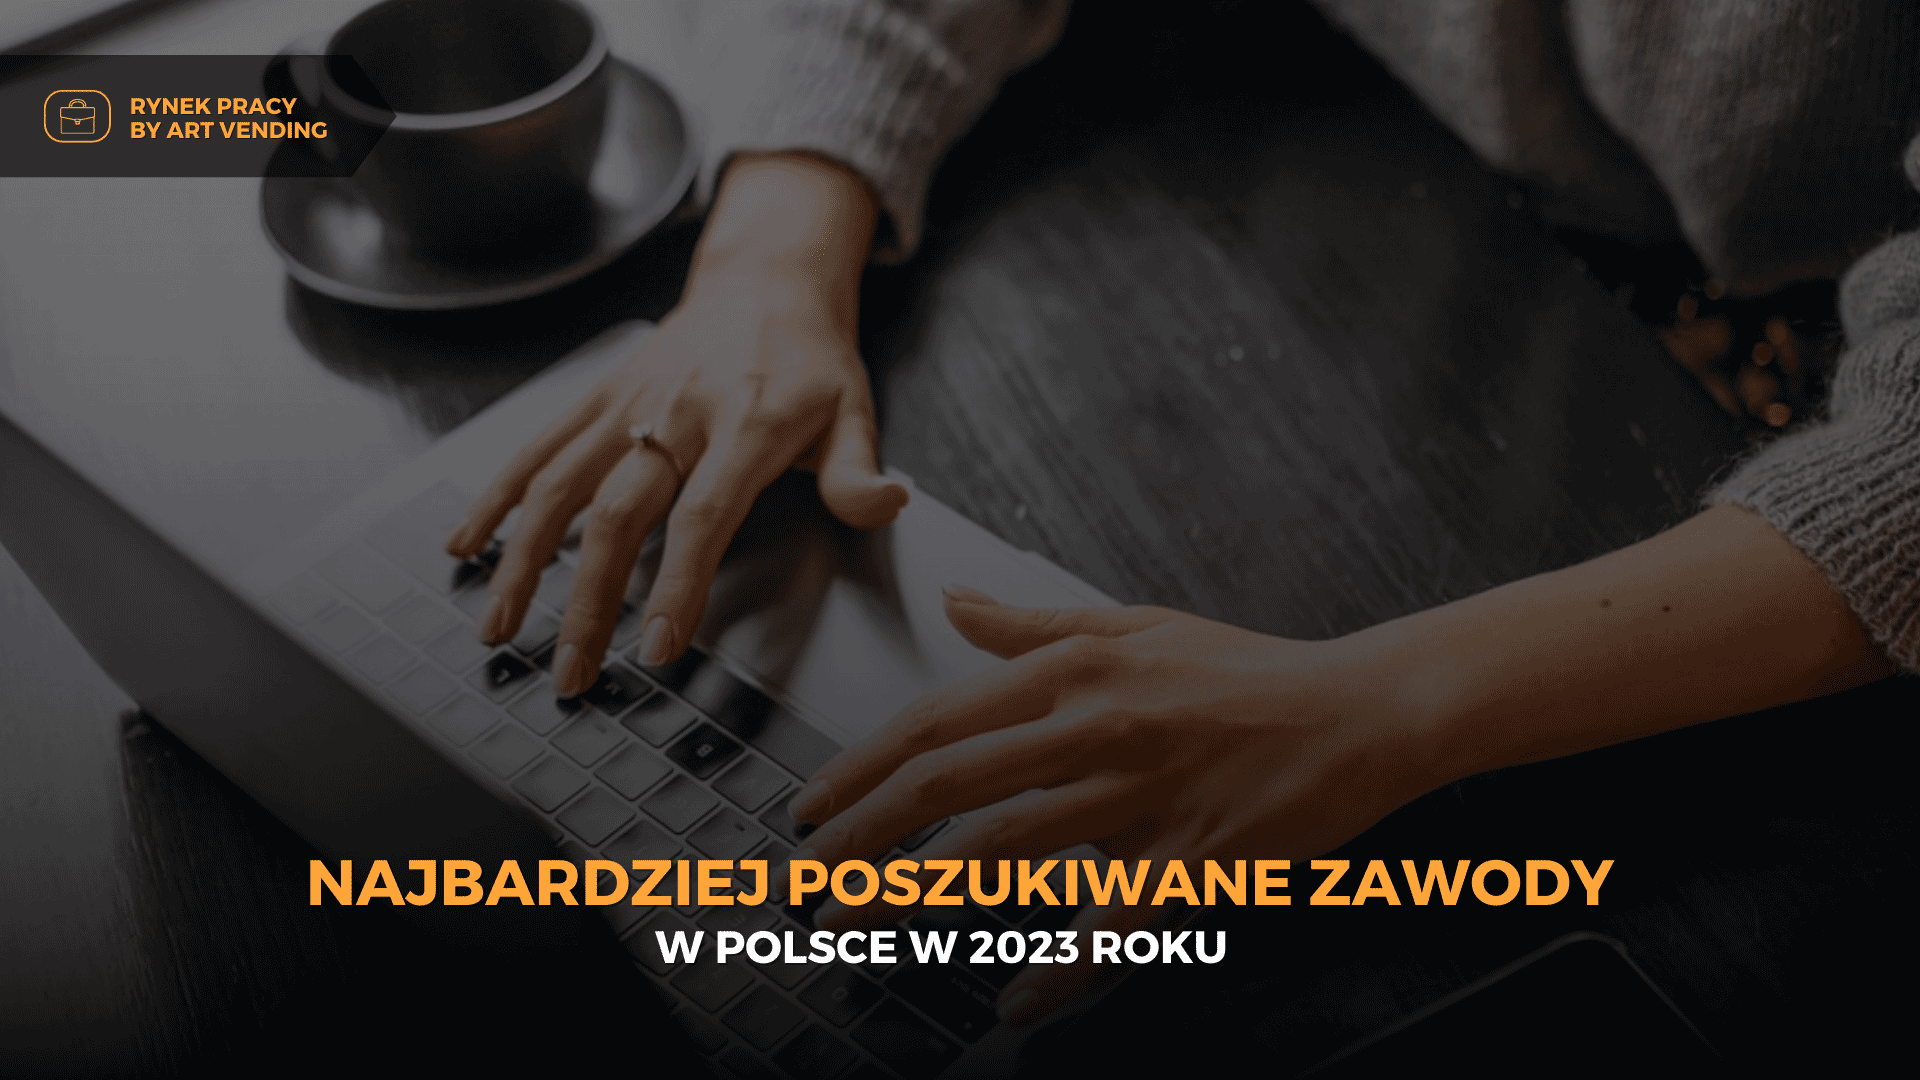 Najbardziej poszukiwane zawody w Polsce w 2023 roku